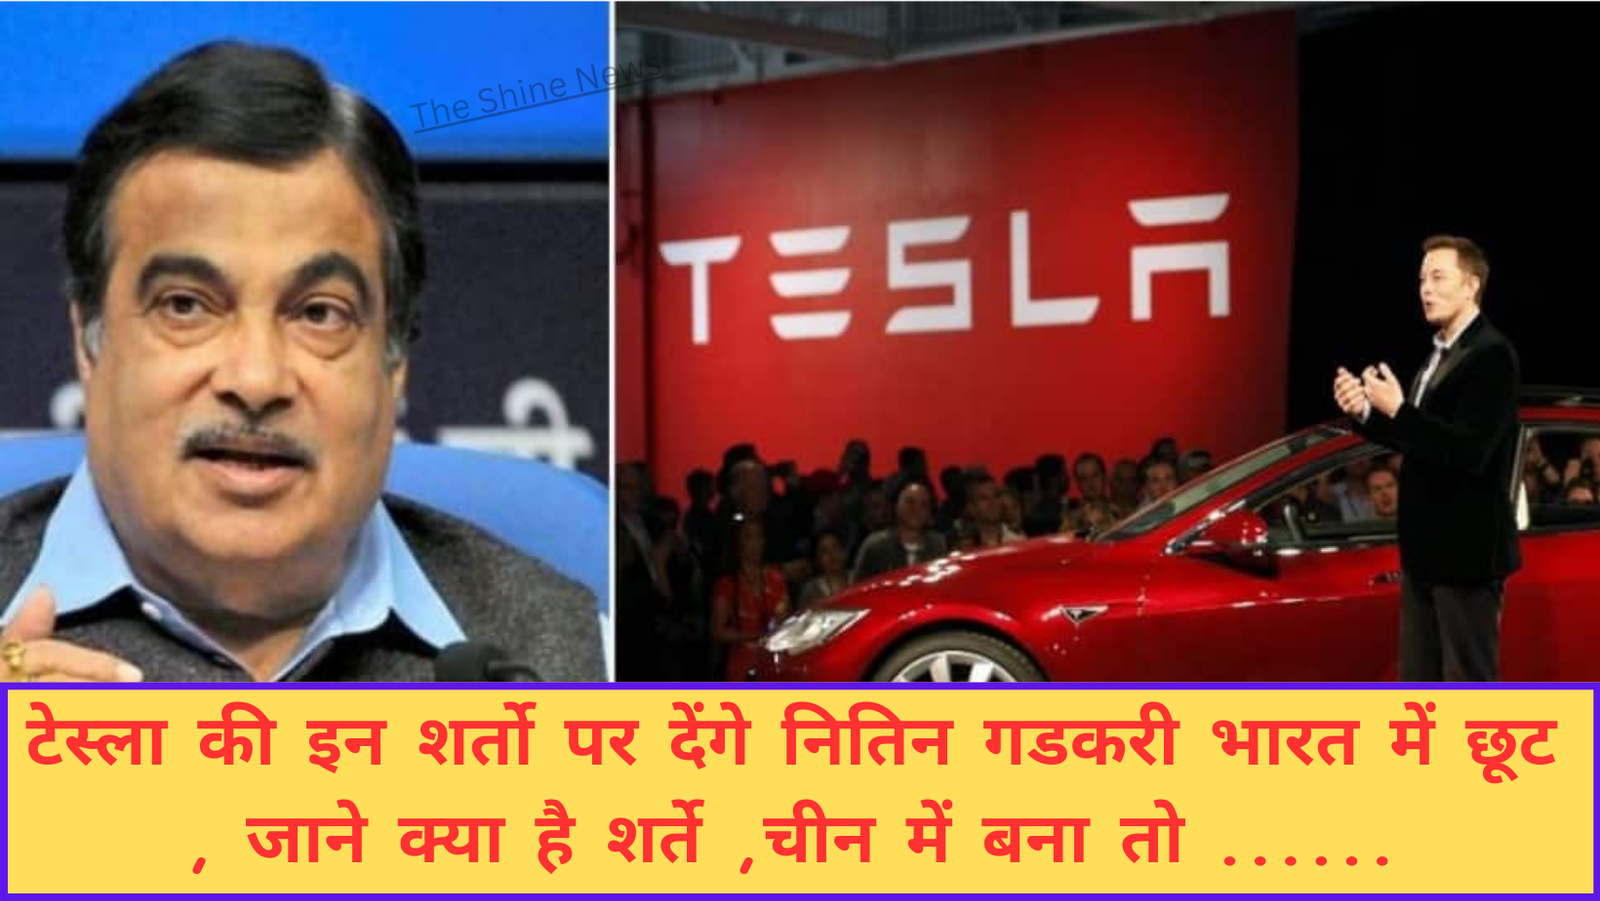 Tesla India News